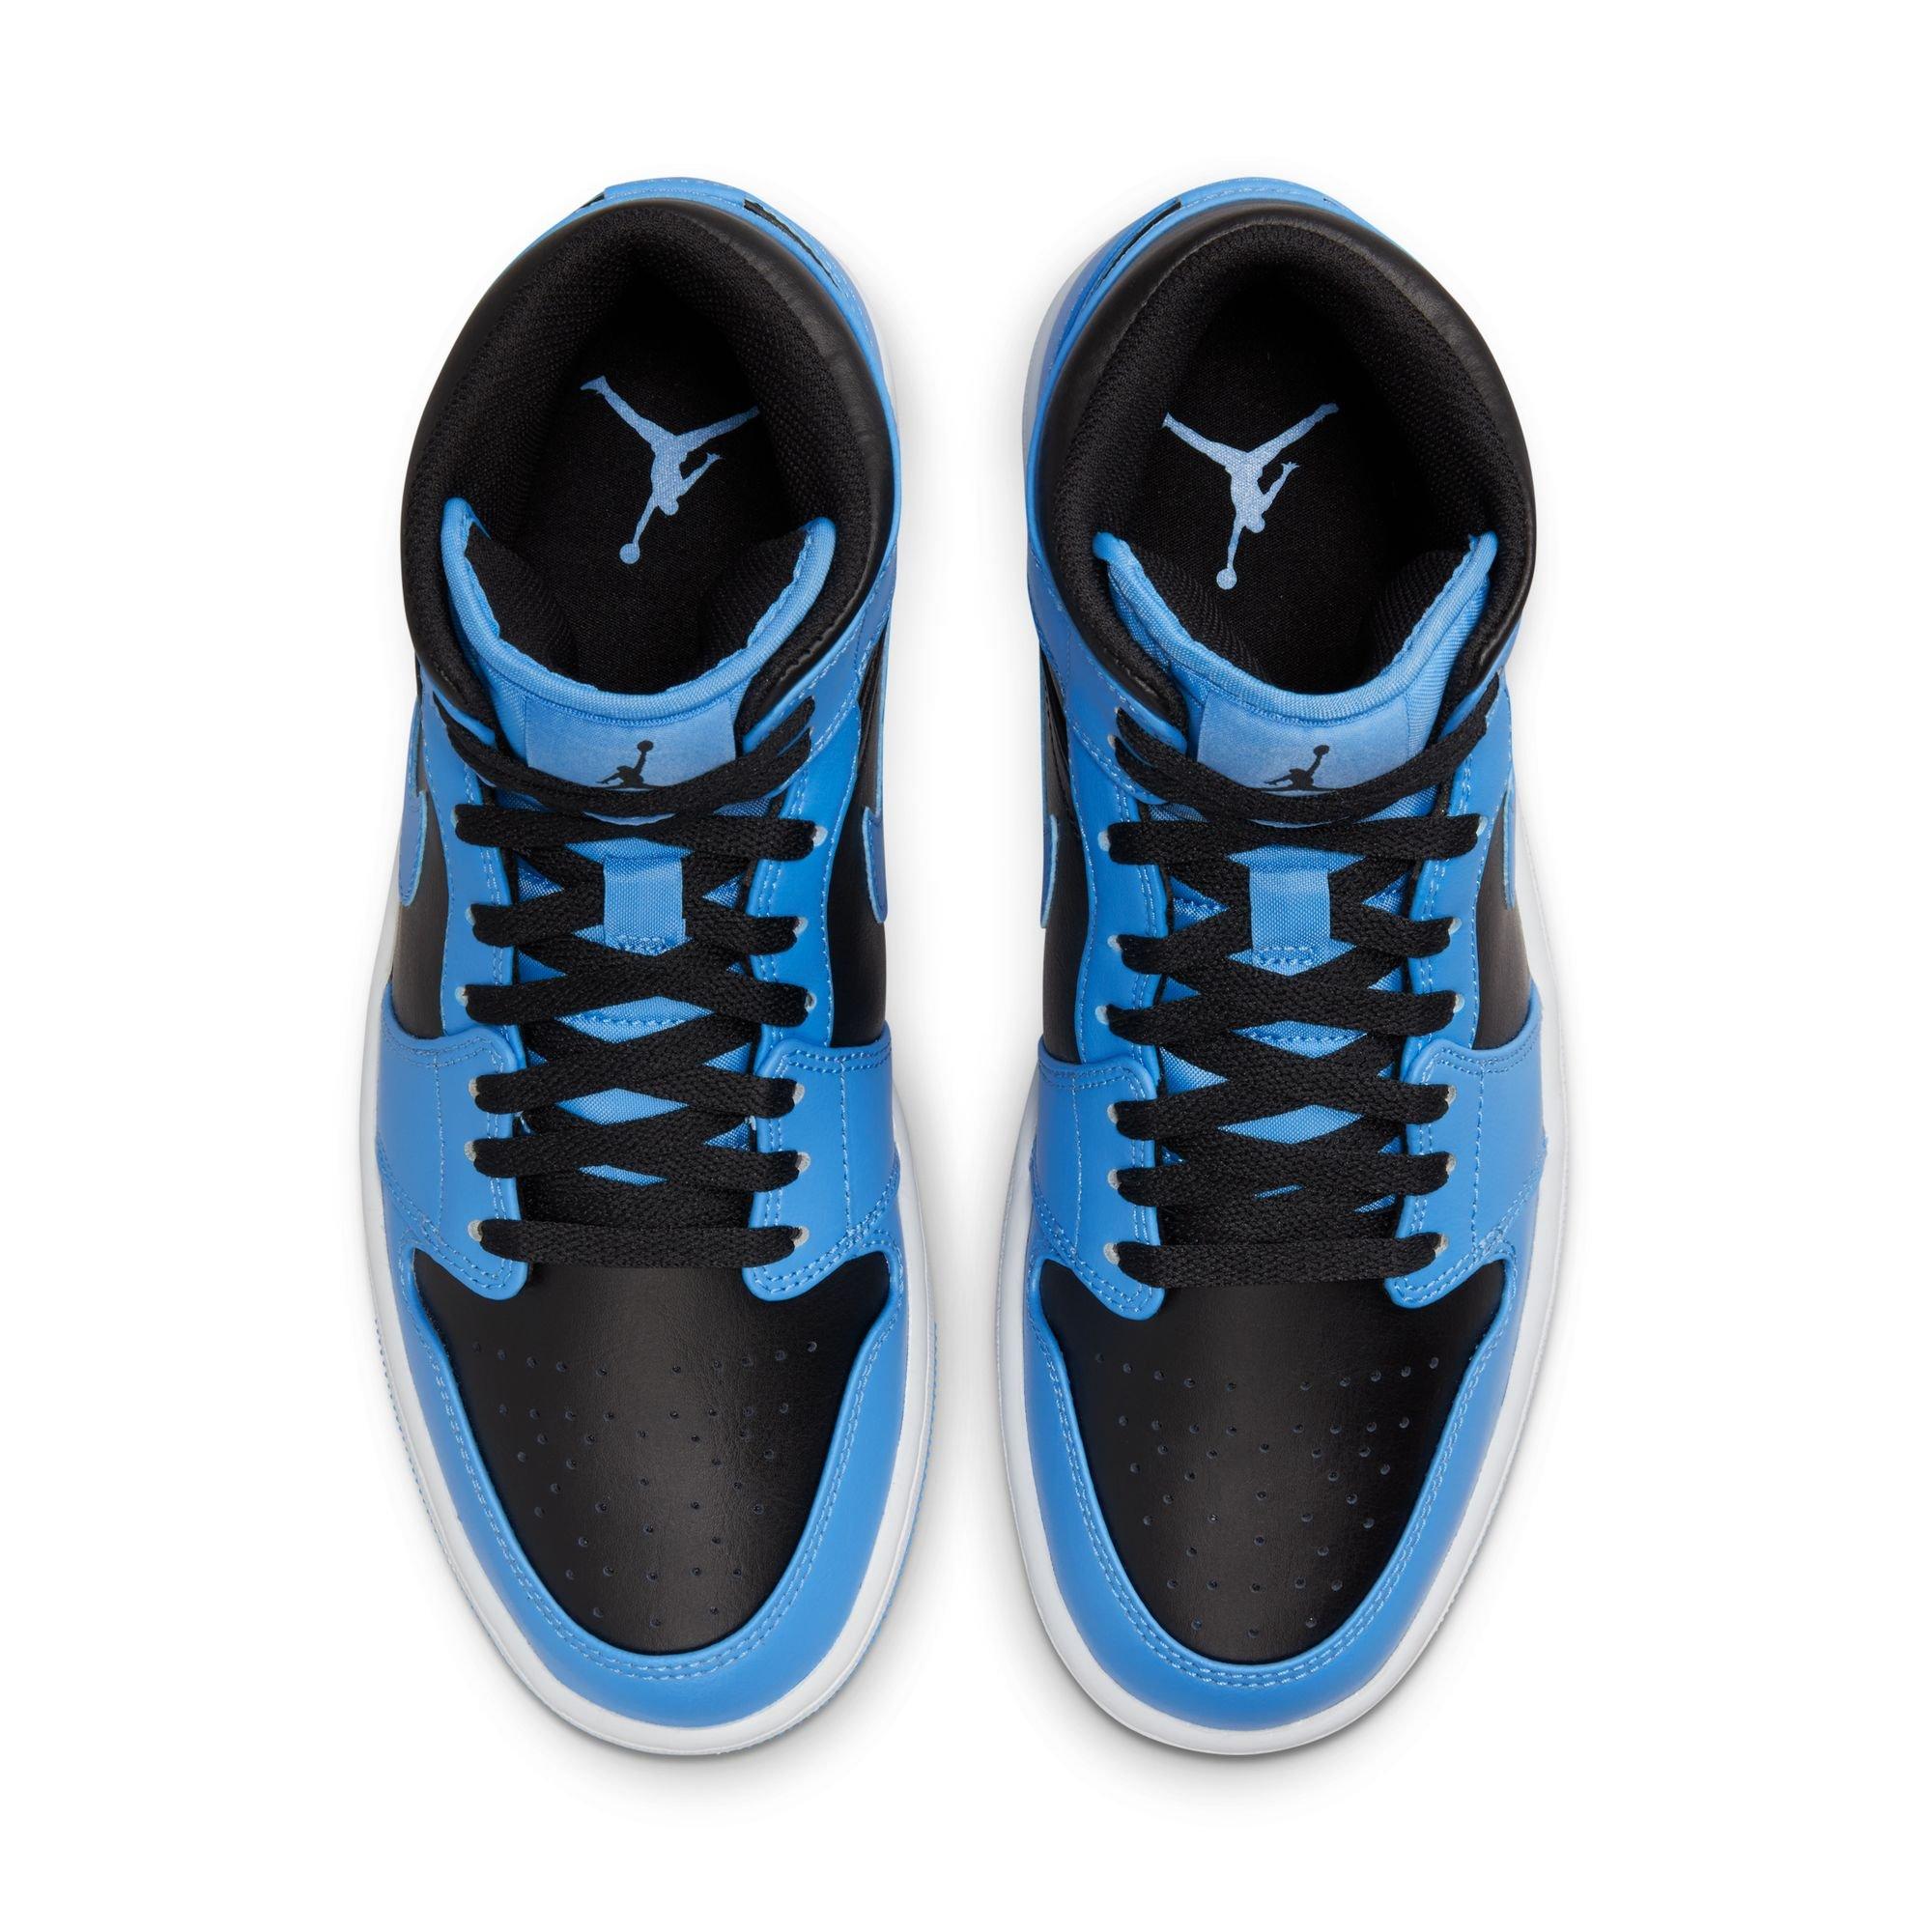 Jordan - Men - Air Jordan 1 Mid - University Blue/Black/White - Nohble